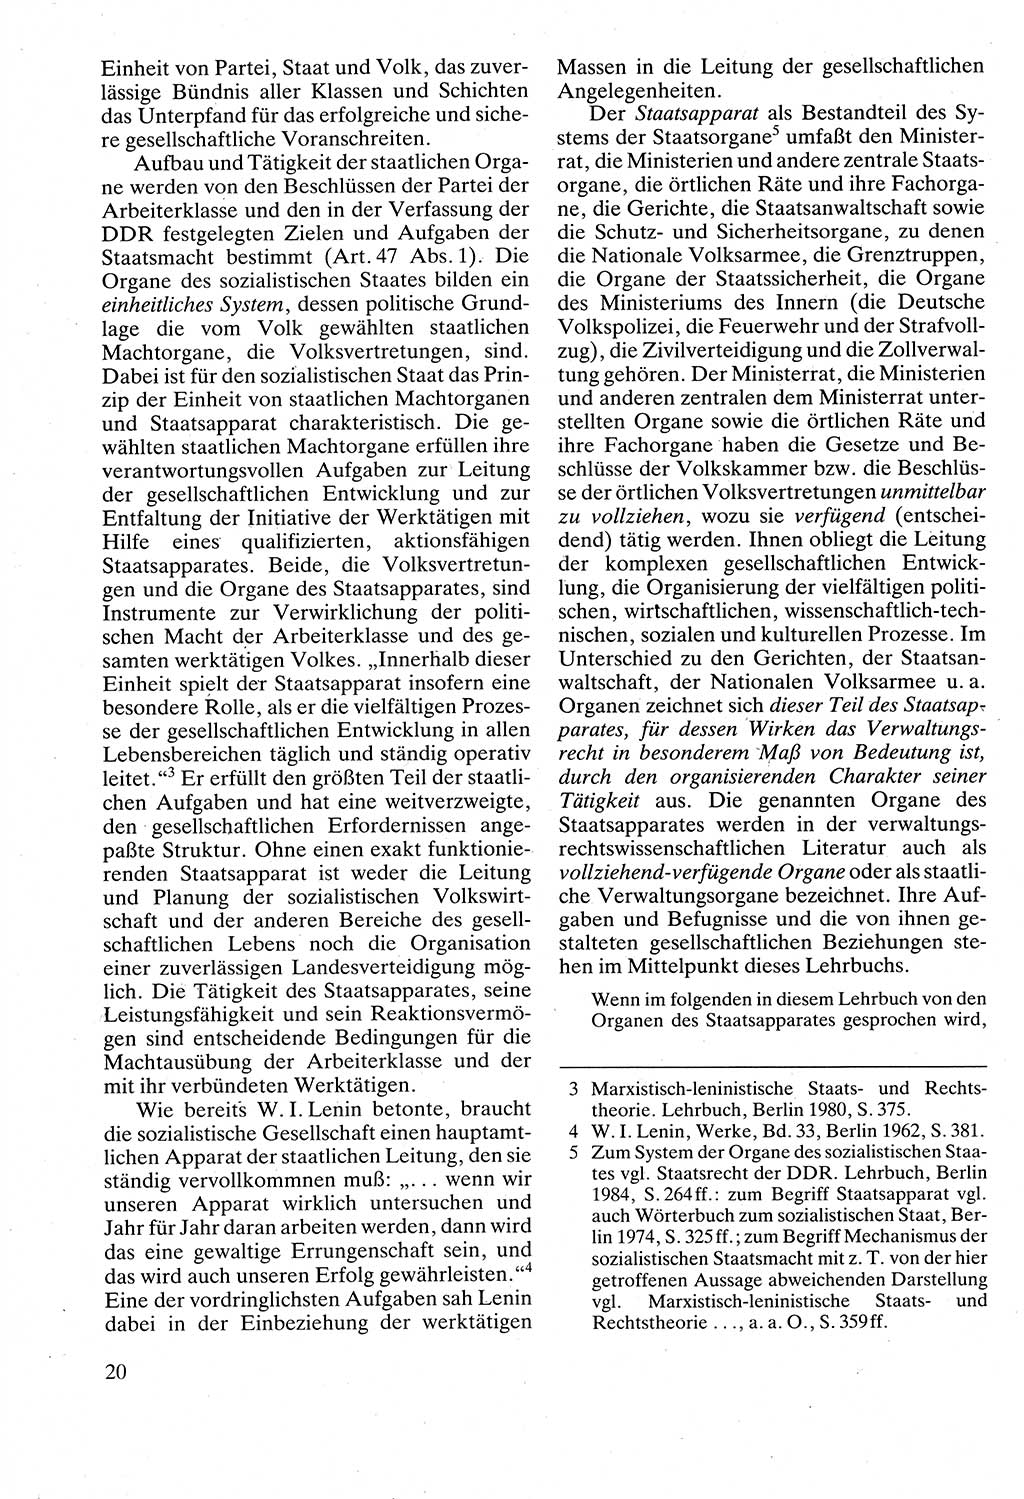 Verwaltungsrecht [Deutsche Demokratische Republik (DDR)], Lehrbuch 1988, Seite 20 (Verw.-R. DDR Lb. 1988, S. 20)